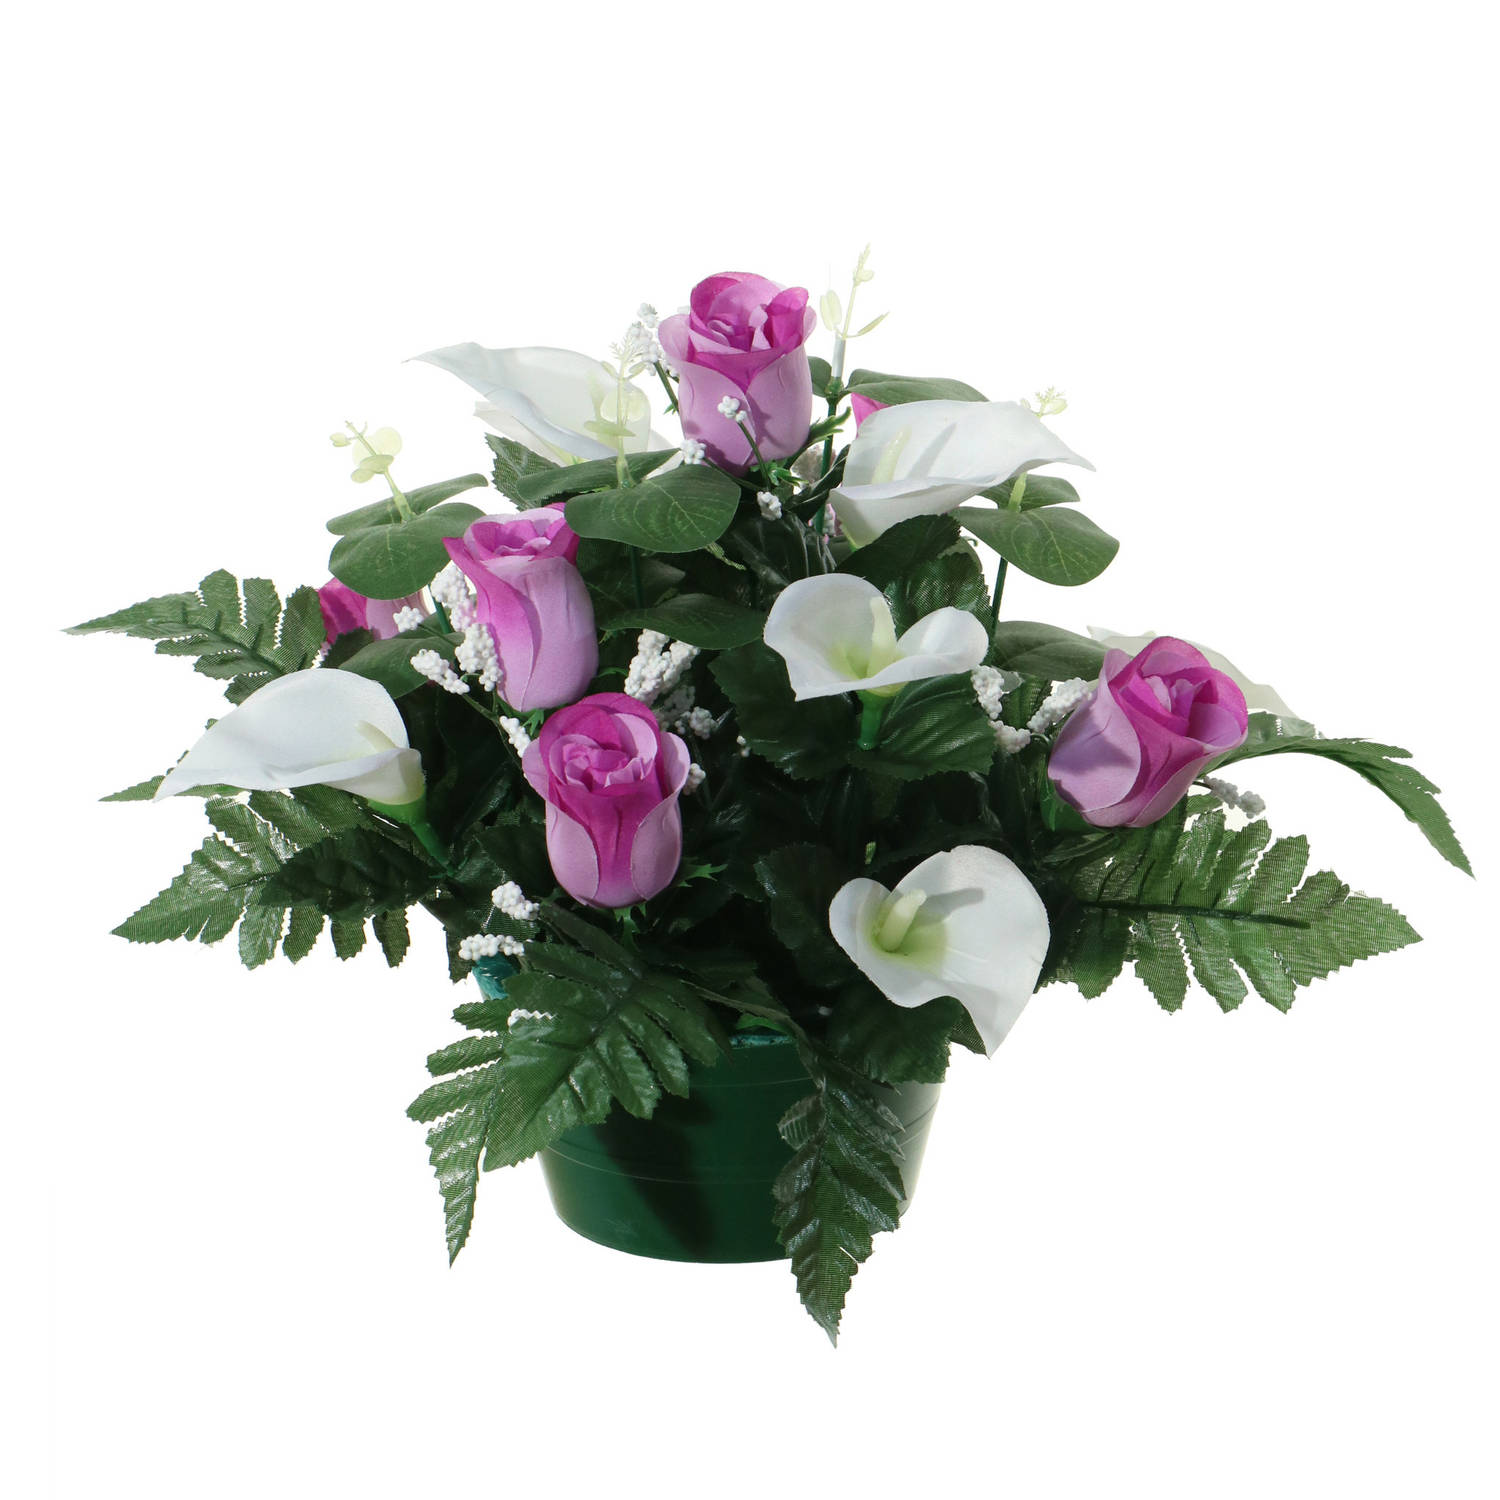 Louis Maes Kunstbloemen plantje in pot - wit/paars - 26 cm - Bloemstuk ornament - rozen met bladgroen